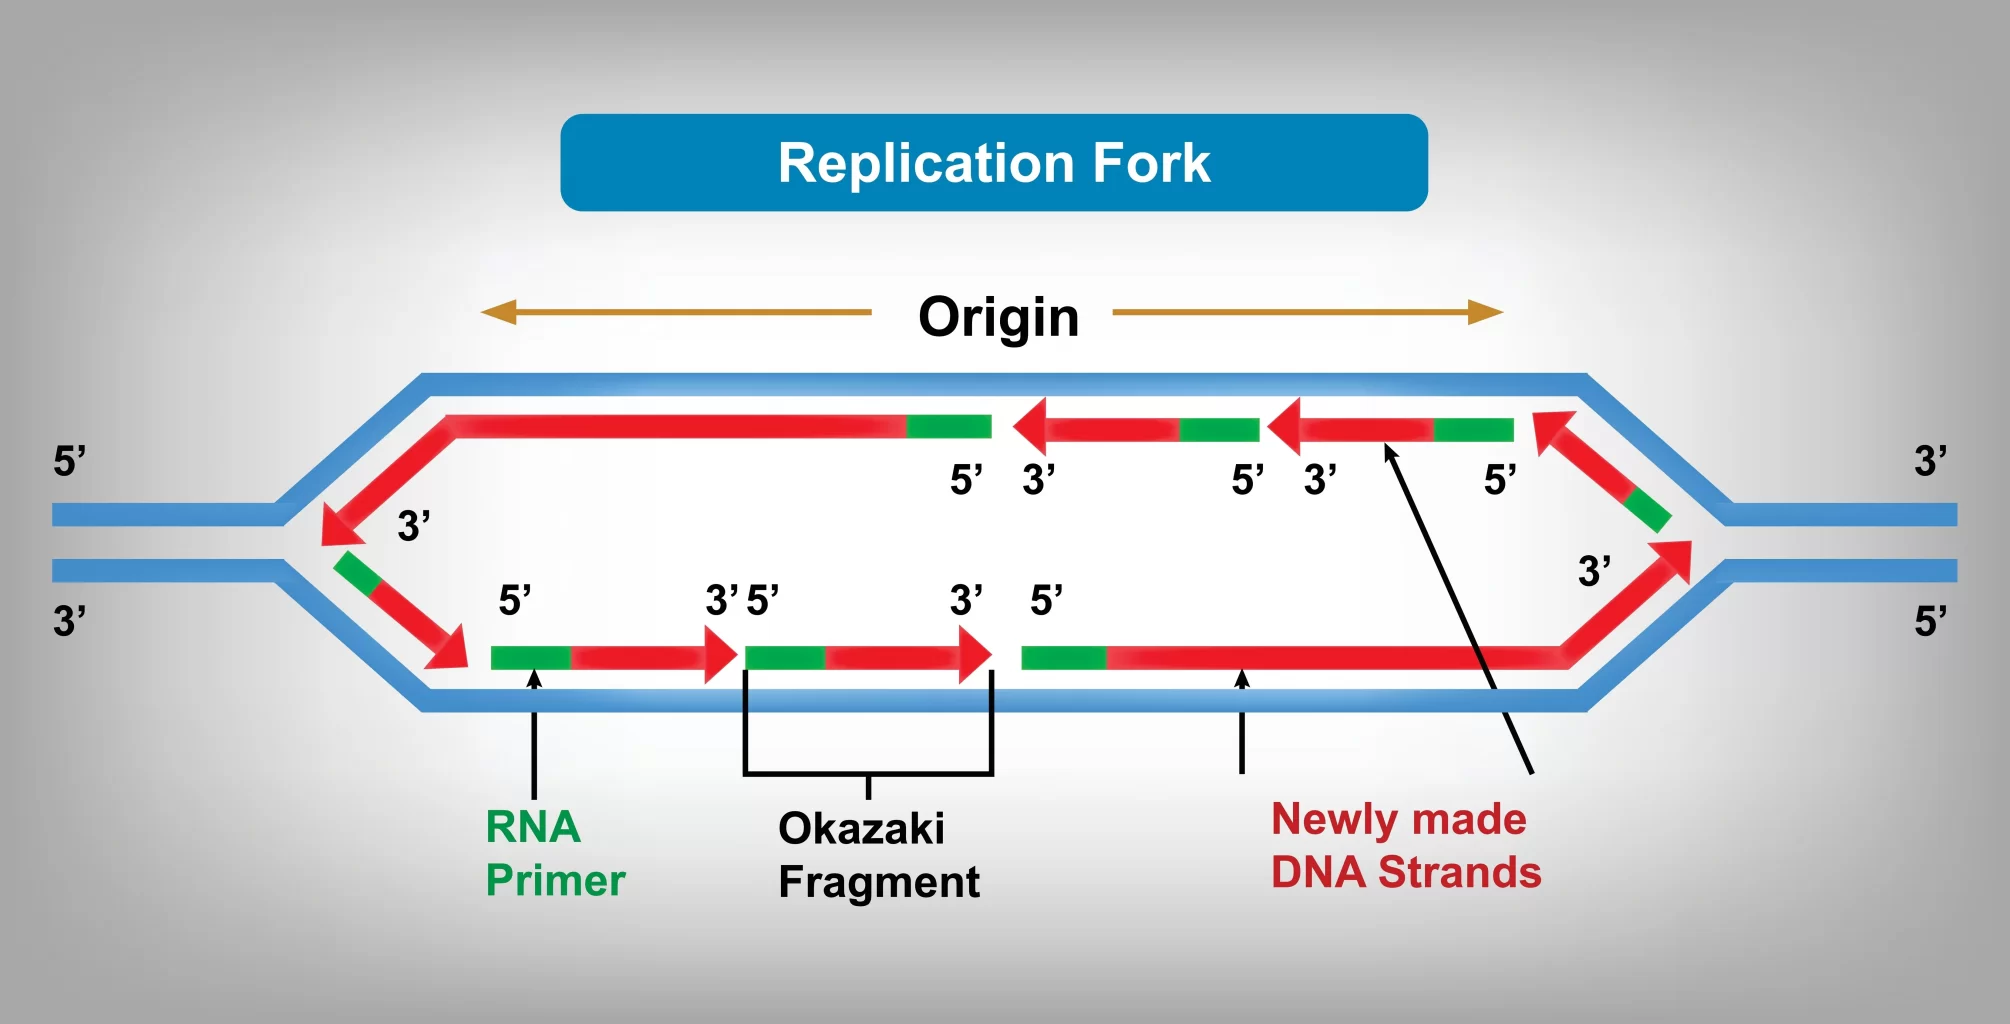 複製フォークは、複製プロセスが行われているDNAの領域です。